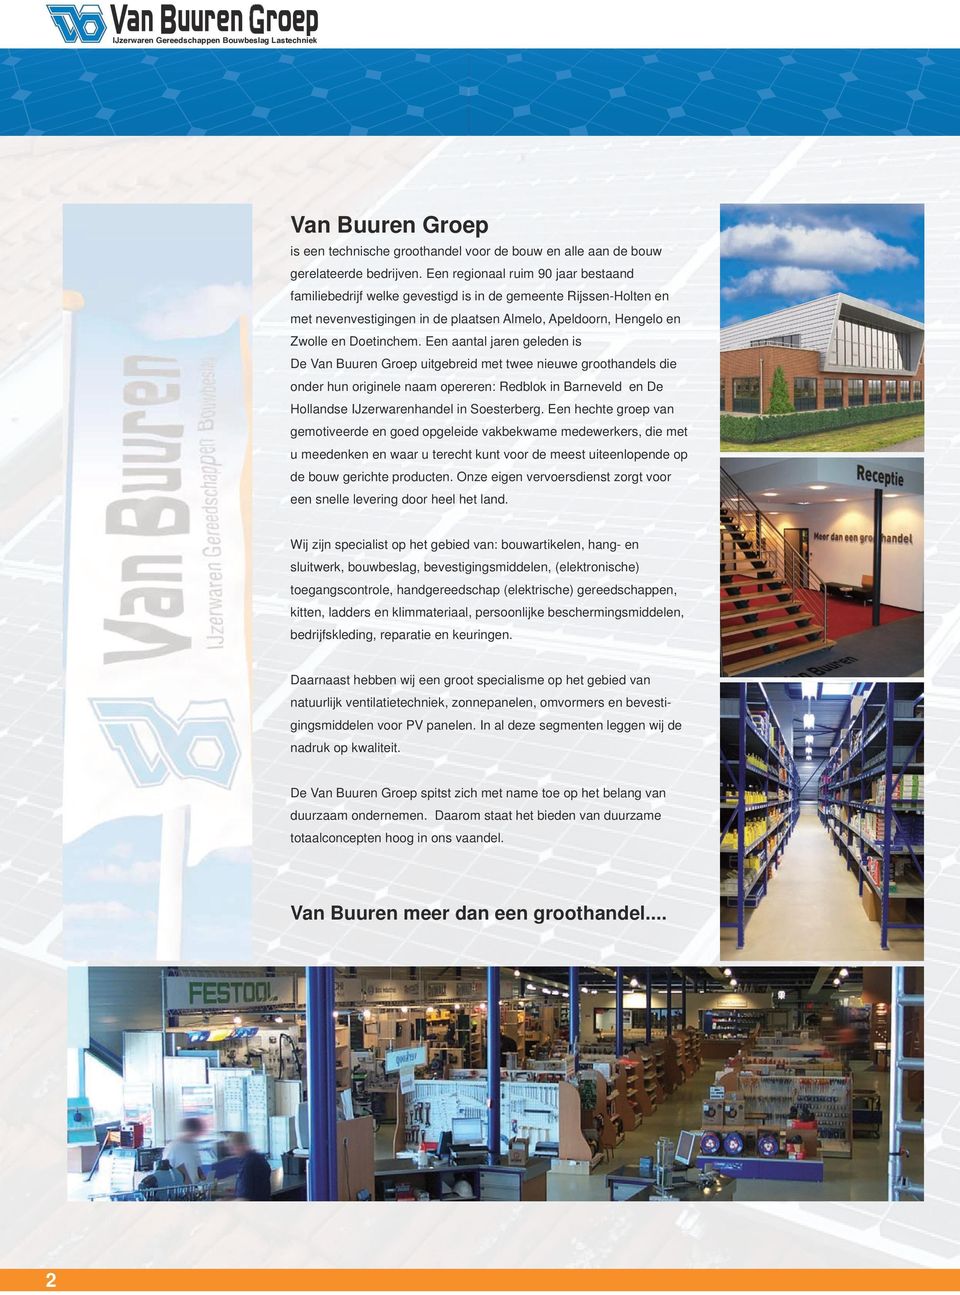 Een aantal jaren geleden is De Van Buuren Groep uitgebreid met twee nieuwe groothandels die onder hun originele naam opereren: Redblok in Barneveld en De Hollandse IJzerwarenhandel in Soesterberg.